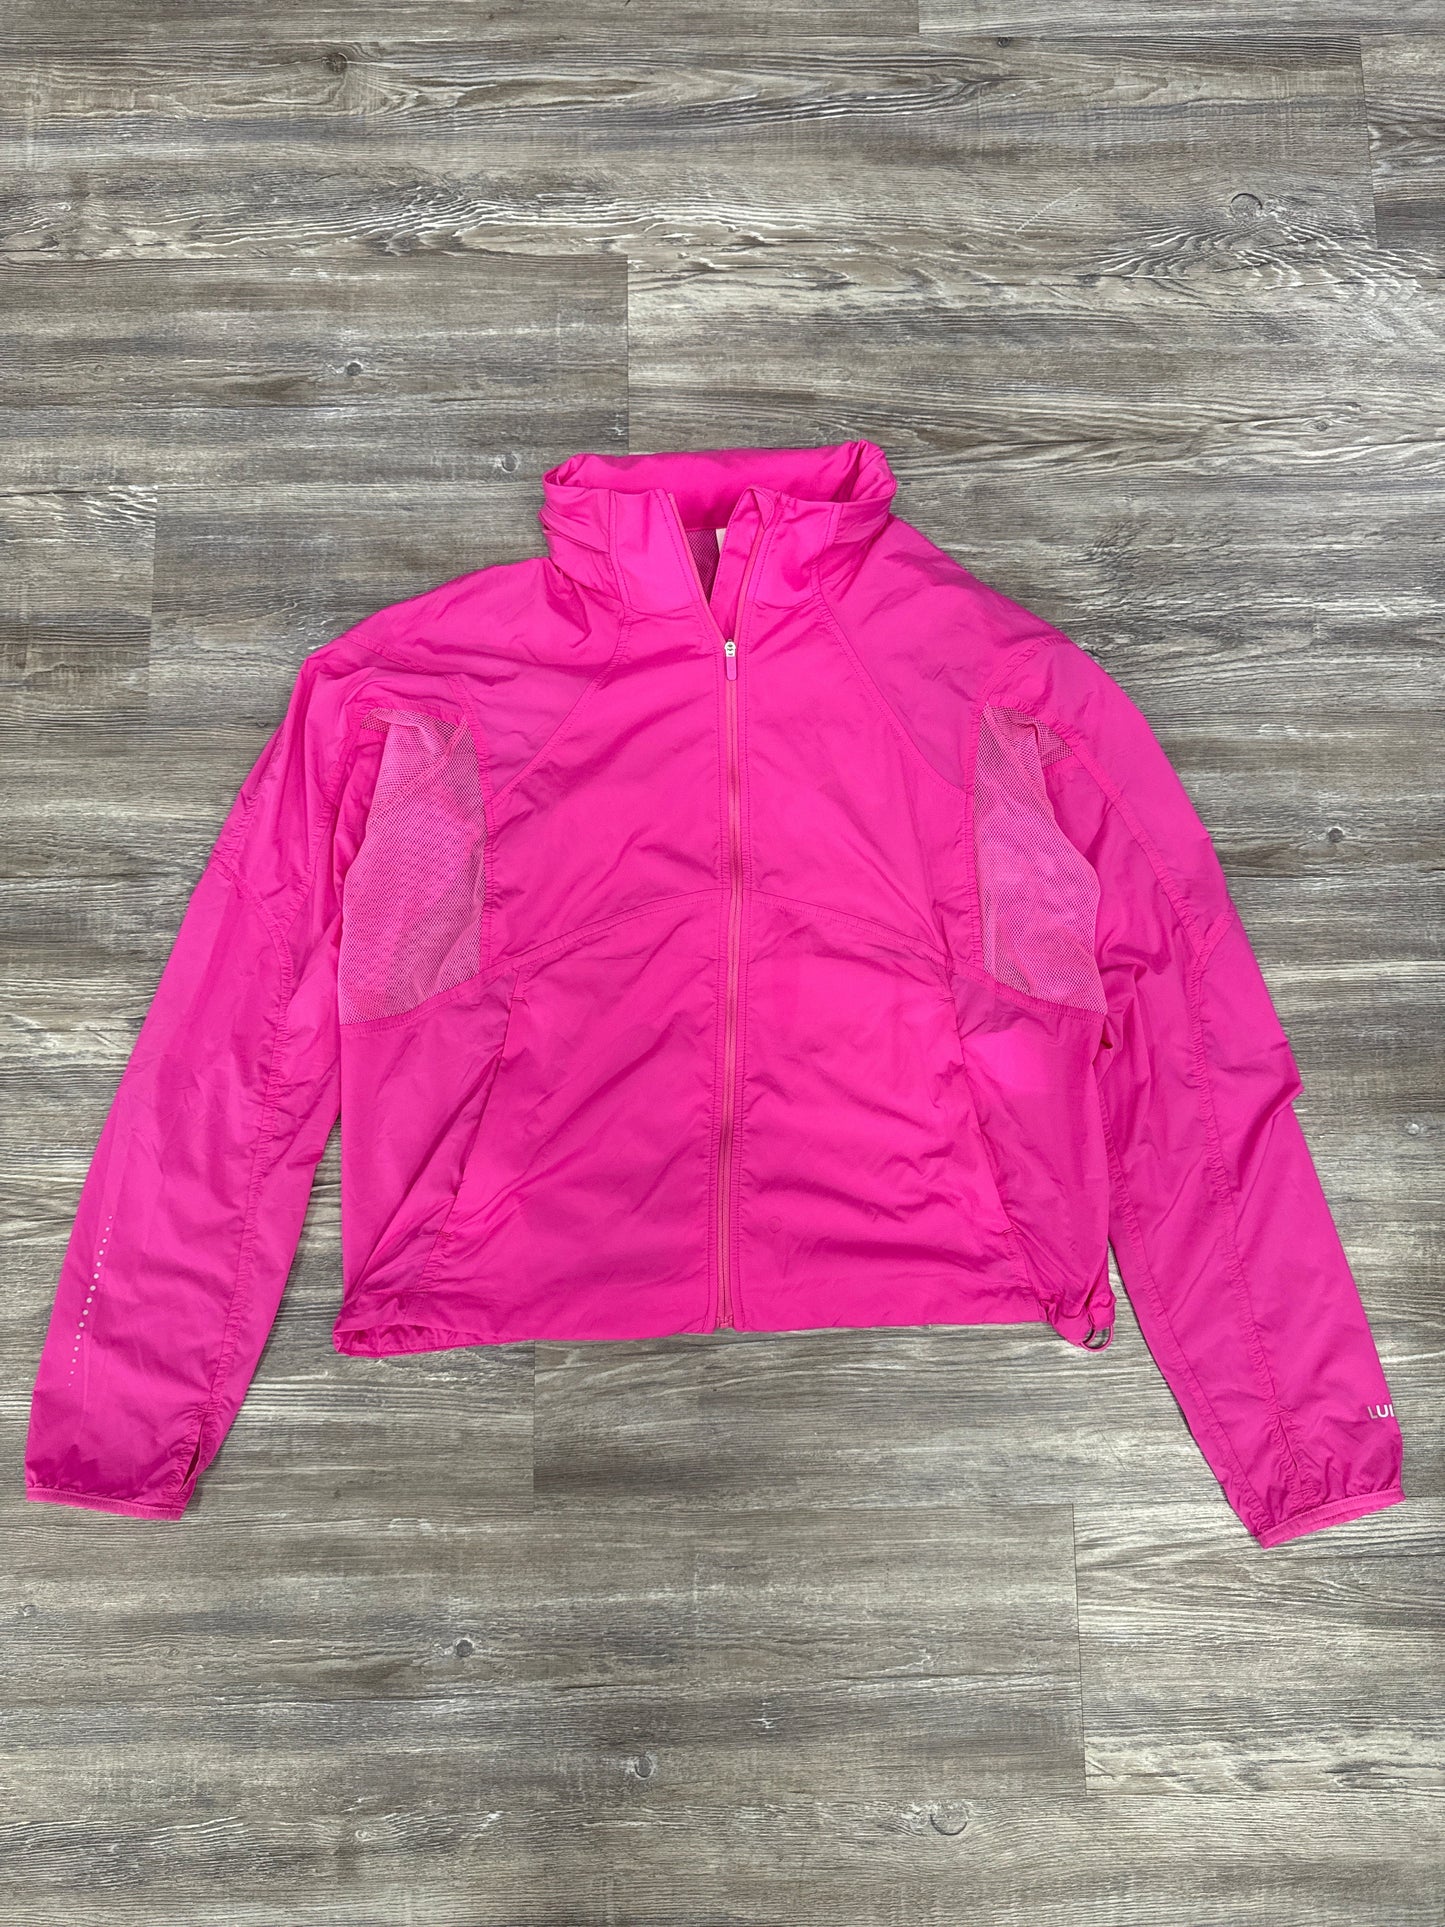 Pink Athletic Jacket Lululemon, Size 10